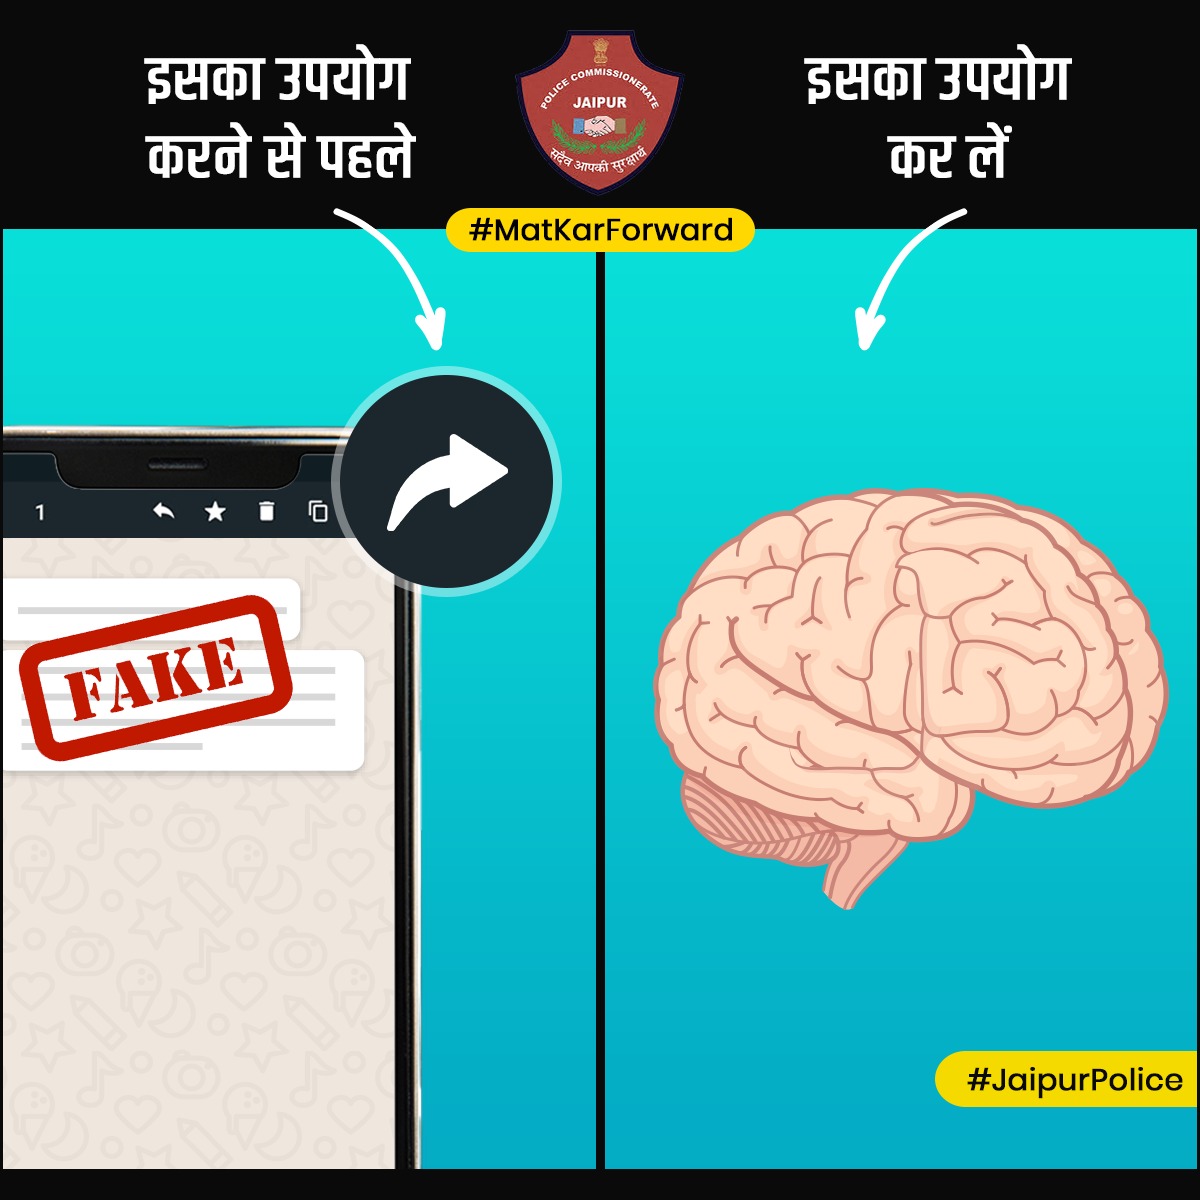 बिना जांचें अगर आप किसी मैसेज को फॉरवर्ड कर रहें हैं, तो आप Fake News को बढ़ावा दे रहें हैं। किसी भी तरह की जानकारी को फॉरवर्ड करने से पहले उसकी पूरी जाँच करें।

#MatKarForward 

 #TeamJaipurPolice #SafeJaipur #SmartJaipur #DontSpreadFakeNews #cybercrime @jaipur_police